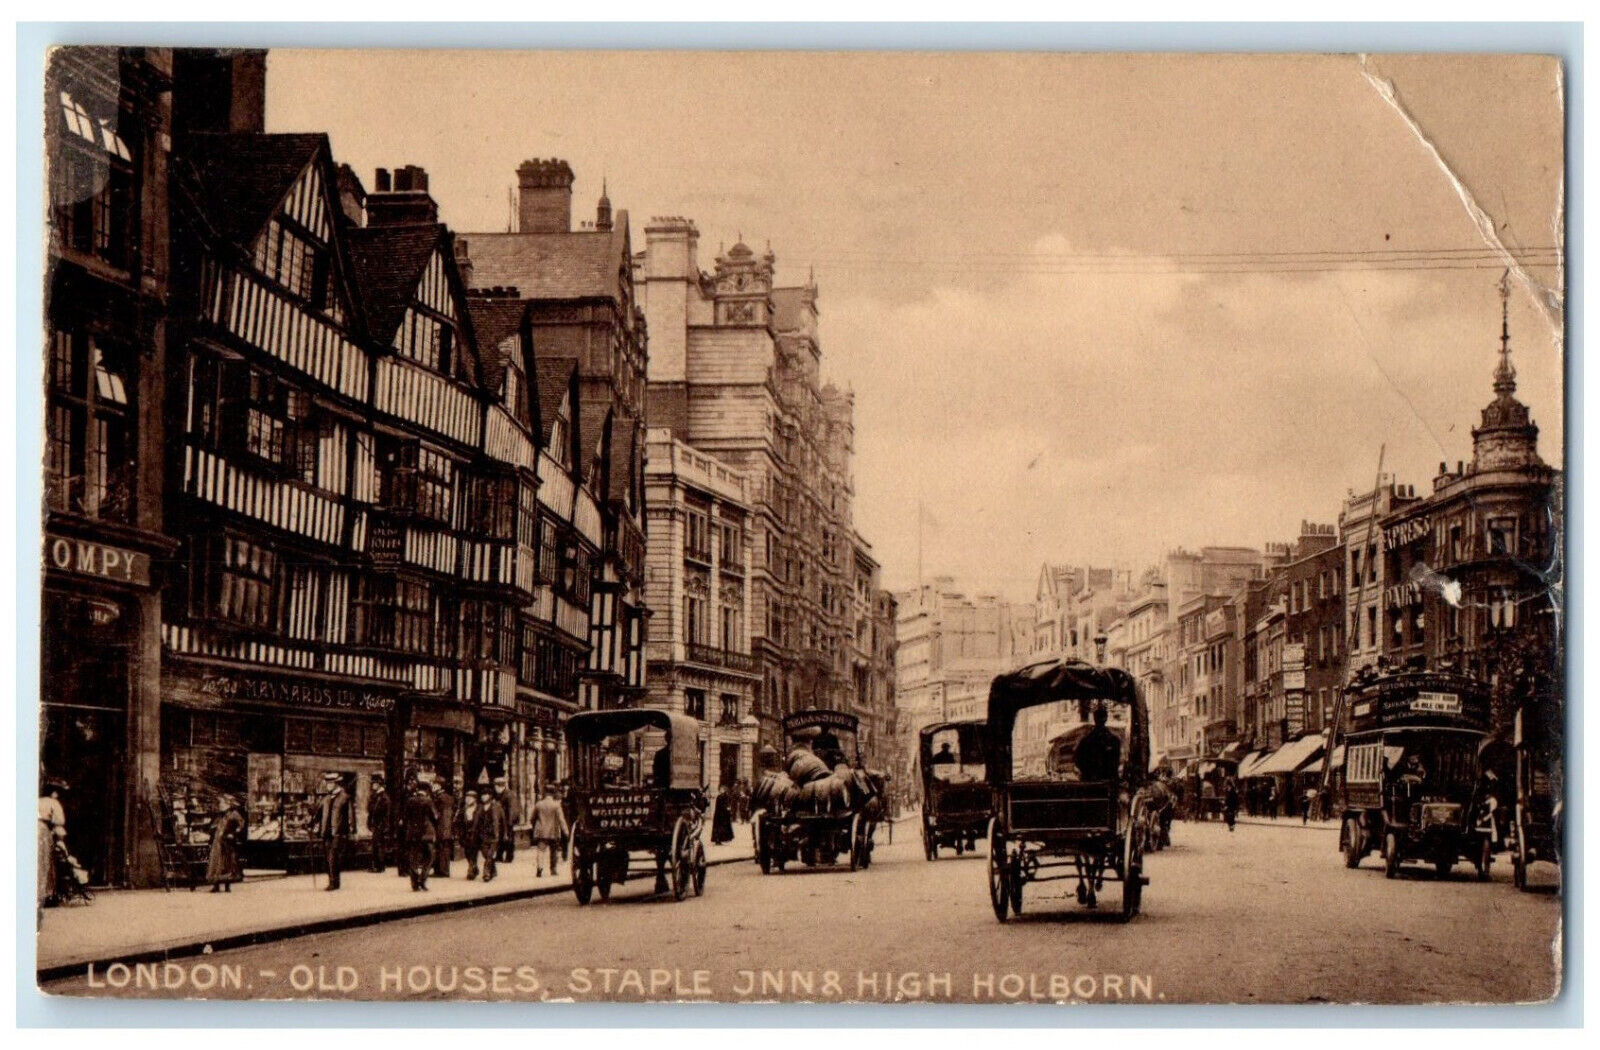 1912 Old Houses Staple JNN & High Holborn London England Antique Postcard